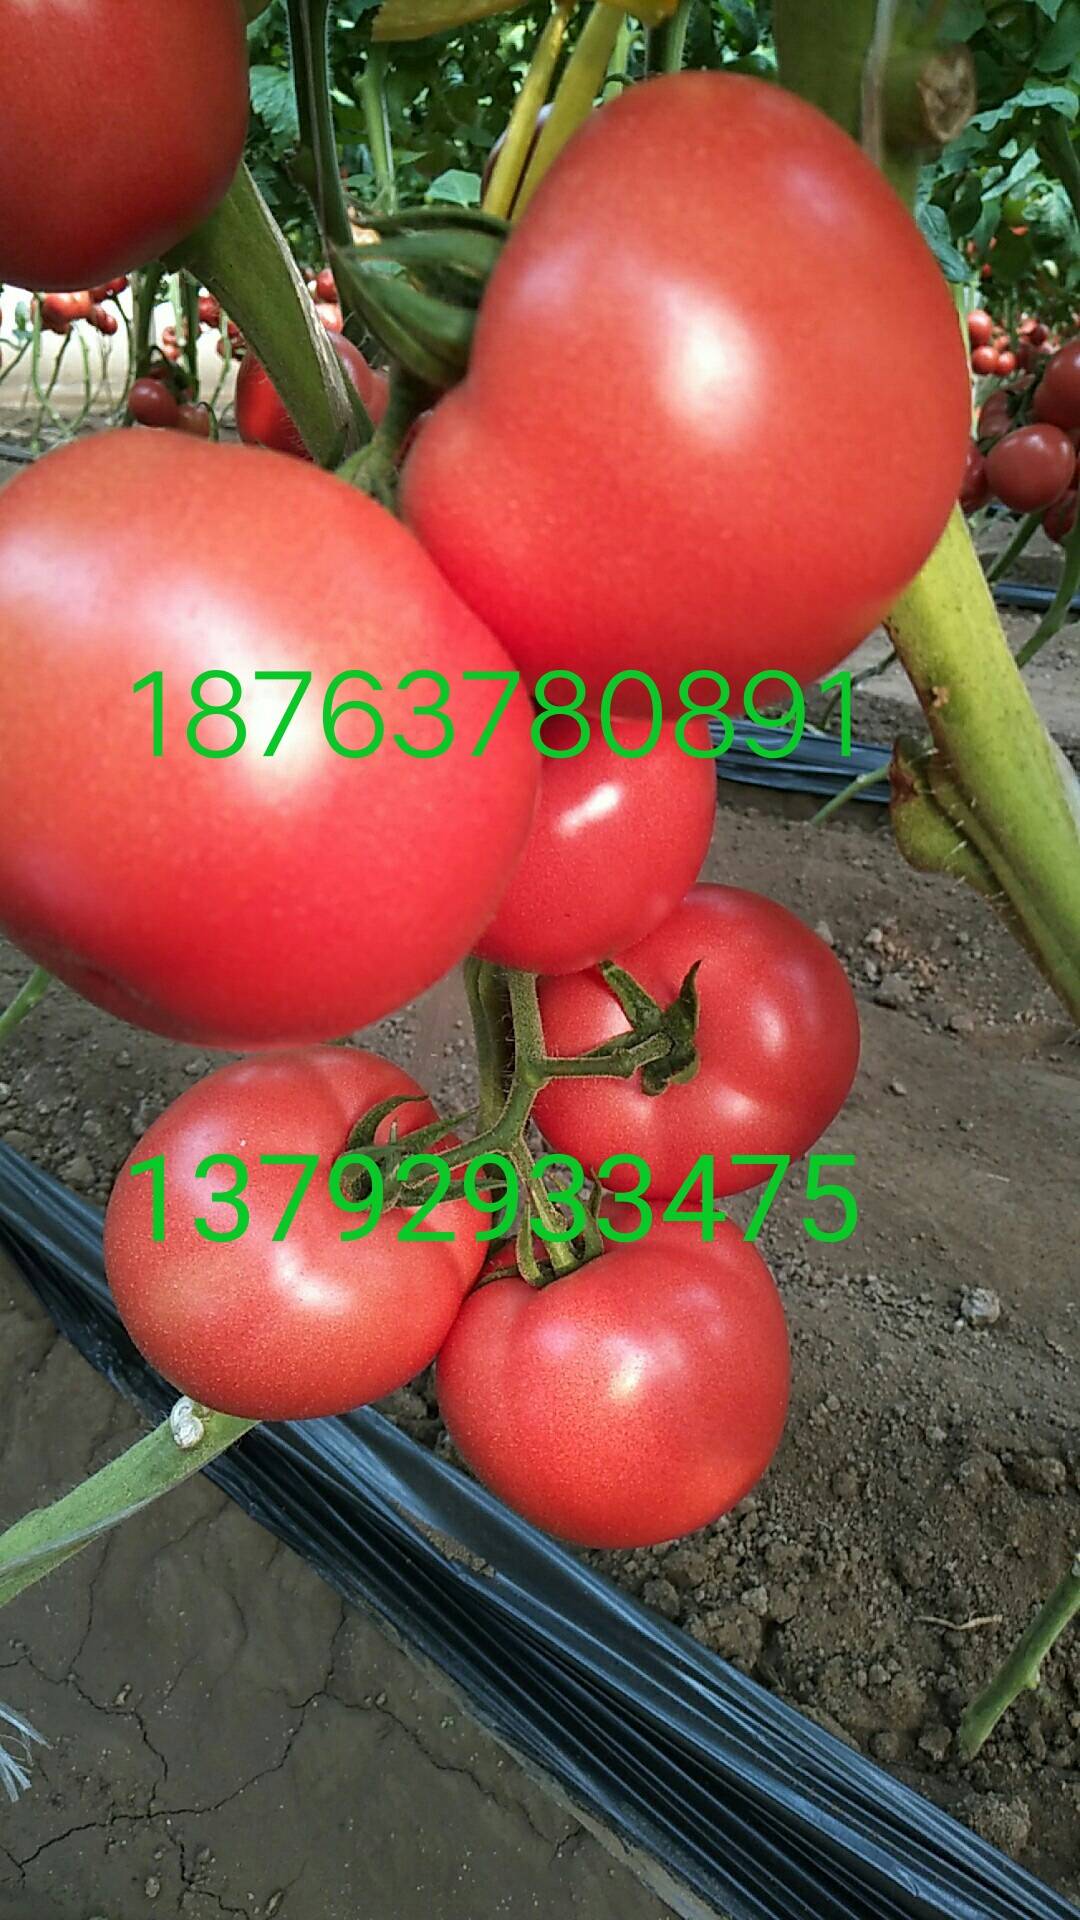 供应优质硬粉西红柿18763780891     137...